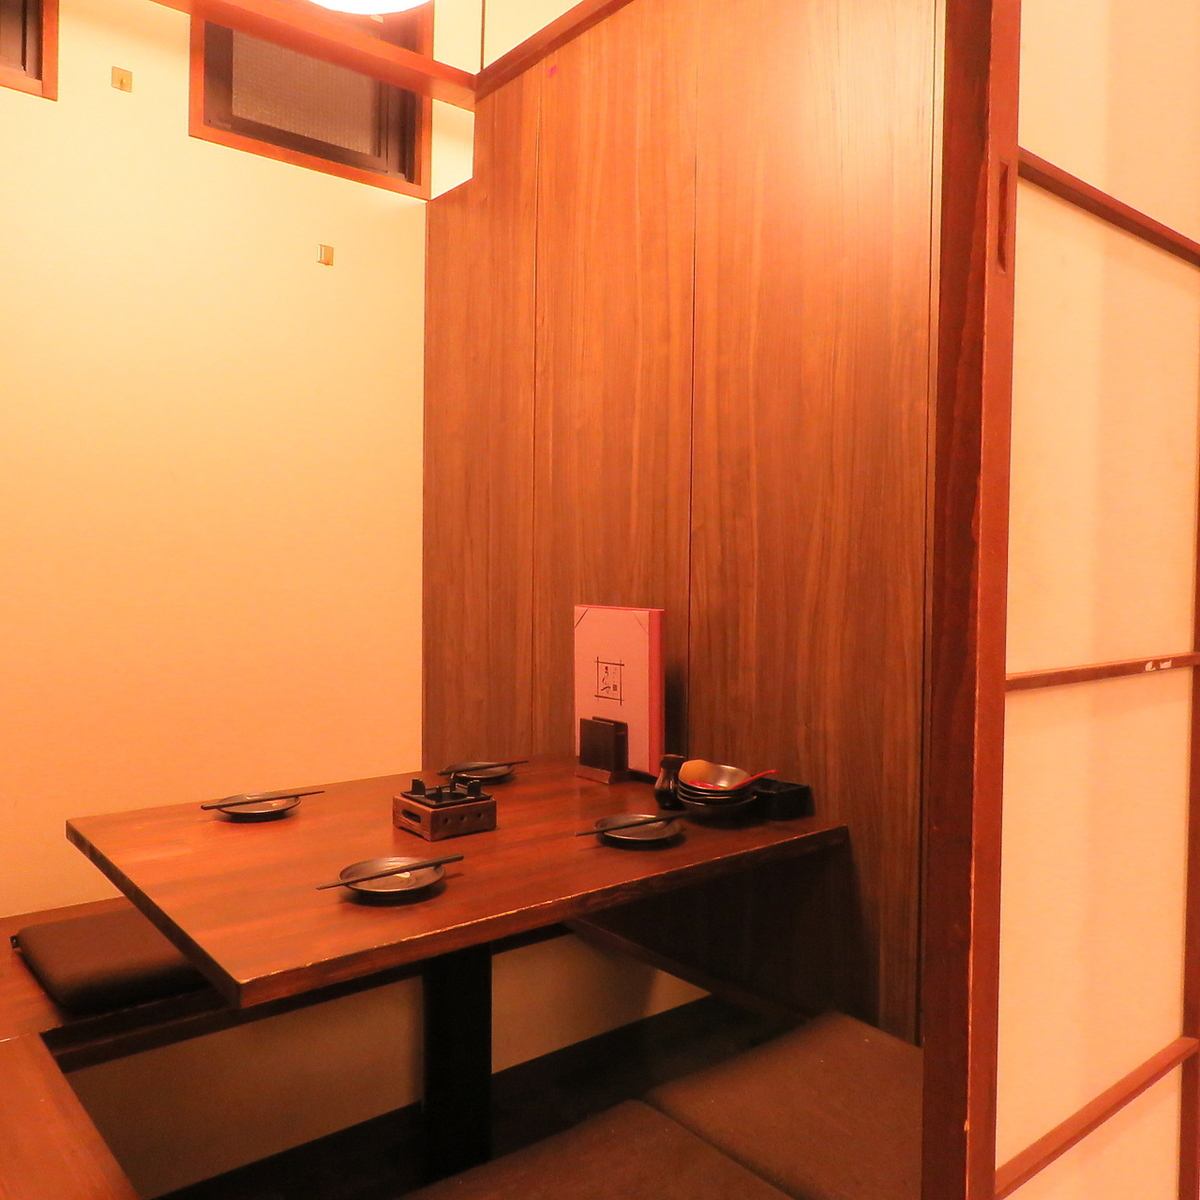 日式现代和平静的2人包房约会......轻松的京都美食★